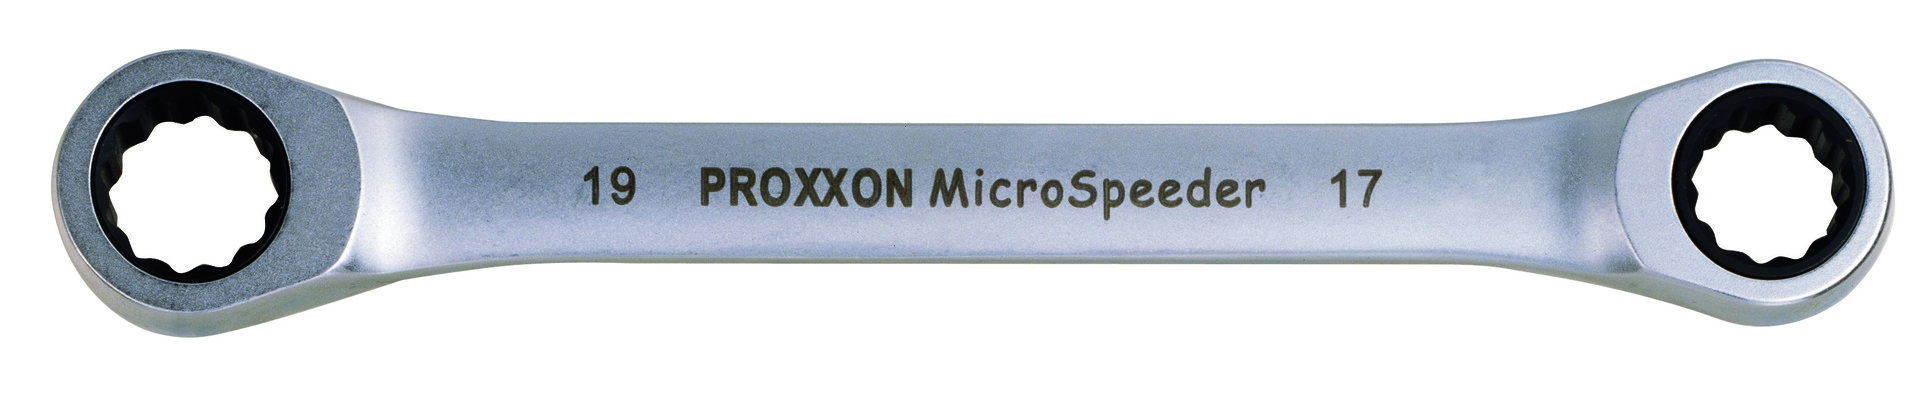 PROXXON GmbH Micro-Speeder Ratschenschlüssel 22x24mm